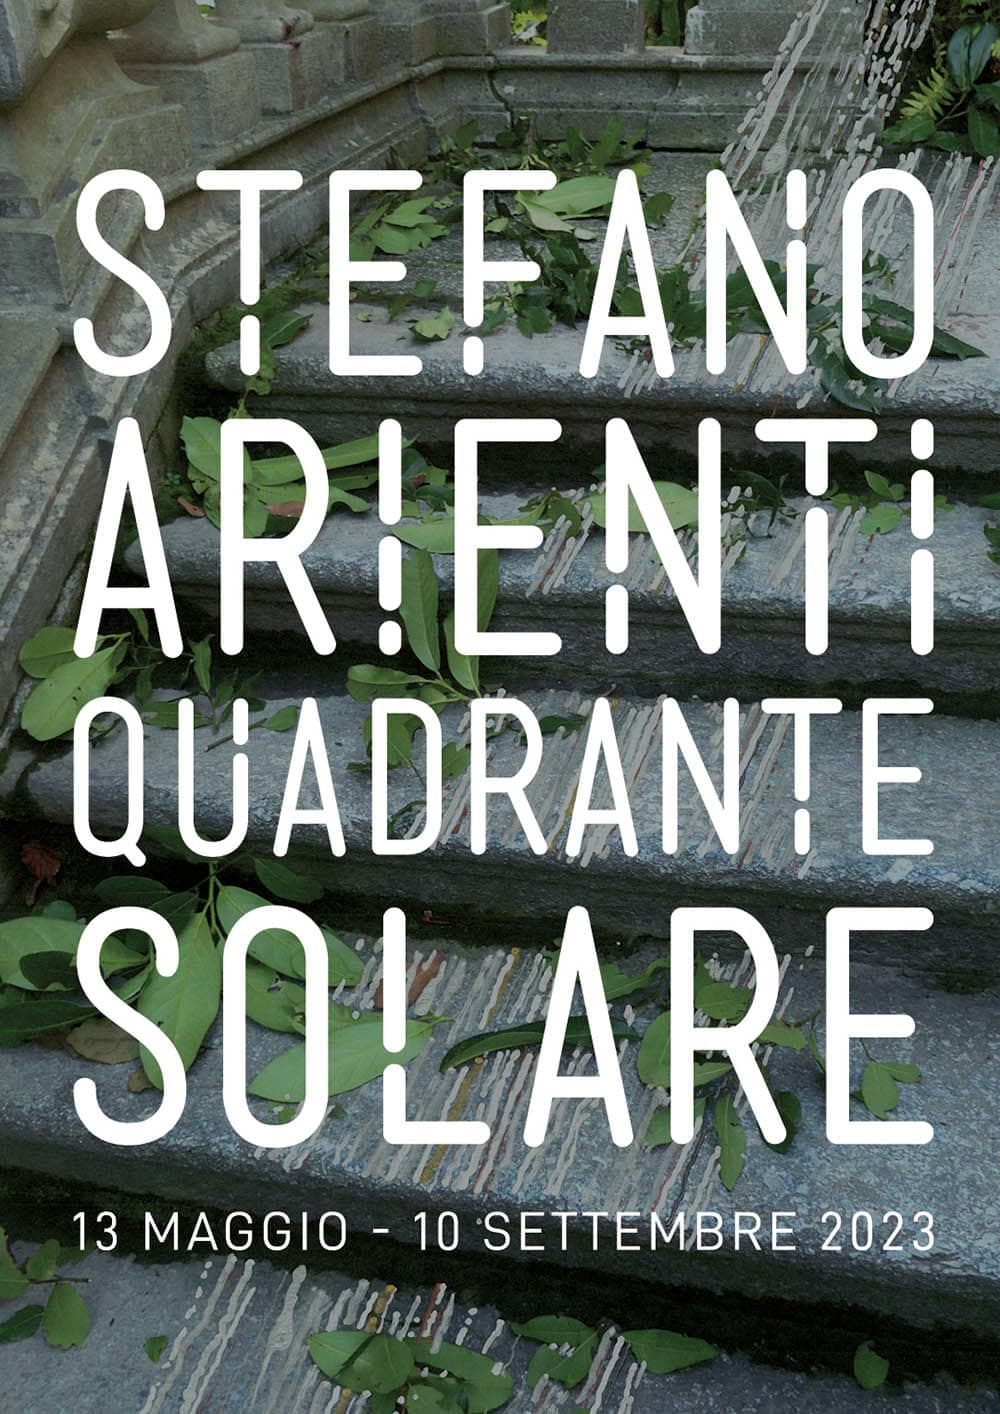 Quadrante solare Stefano Arienti a Villa Carlotta - 13 maggio – 10 settembre 2023